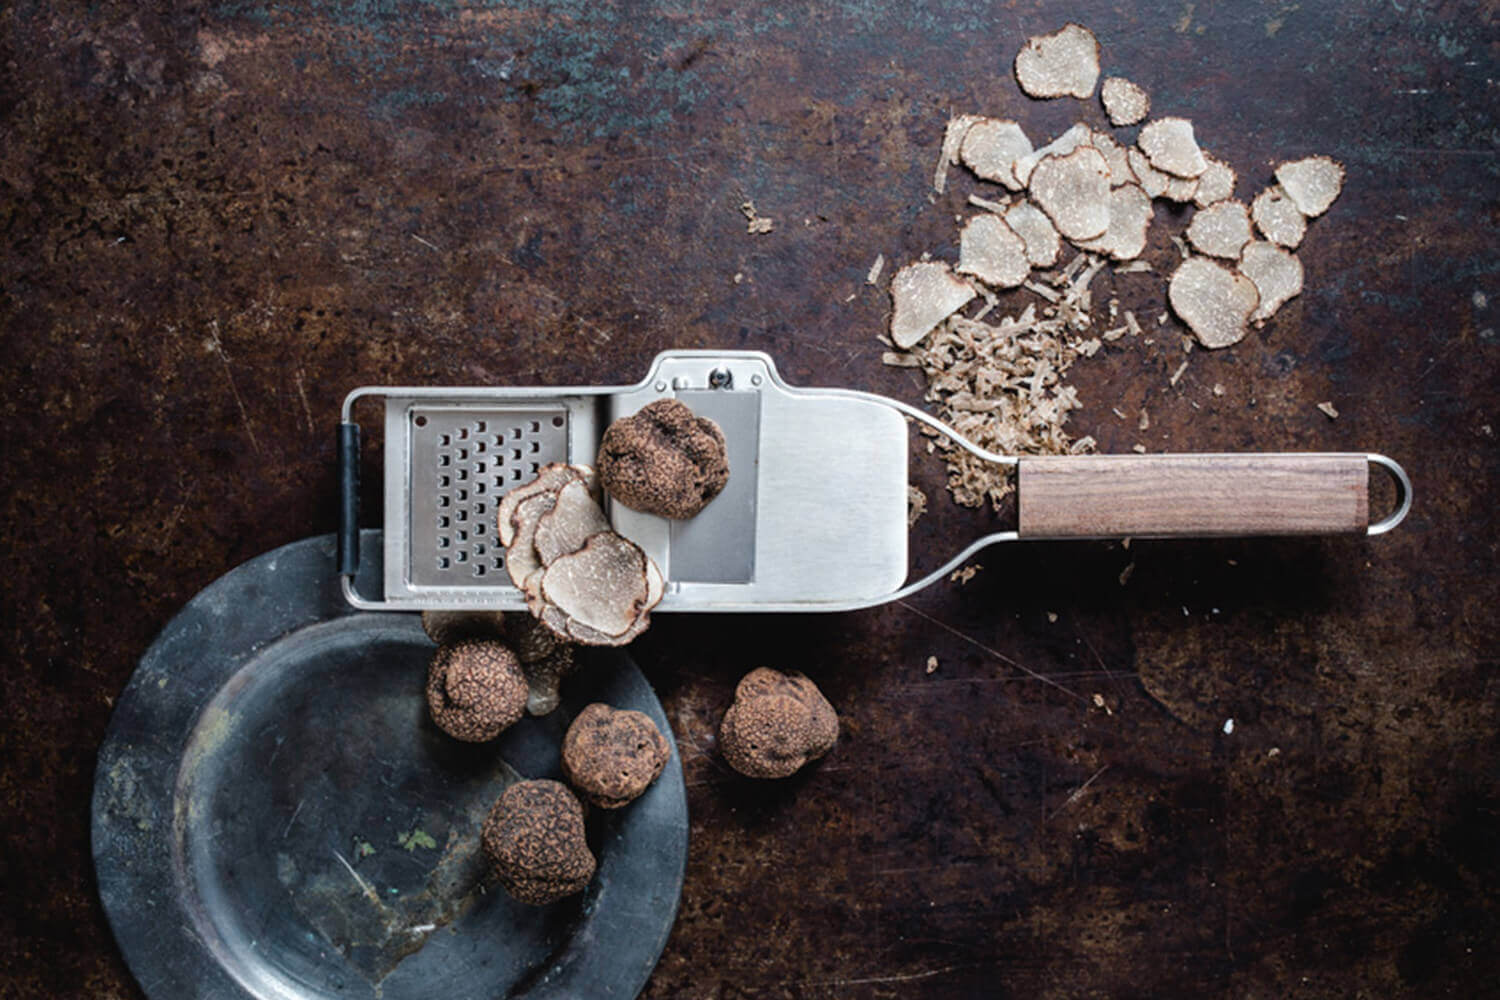 Râpe à truffes en oliver — Couteaux Fontaine